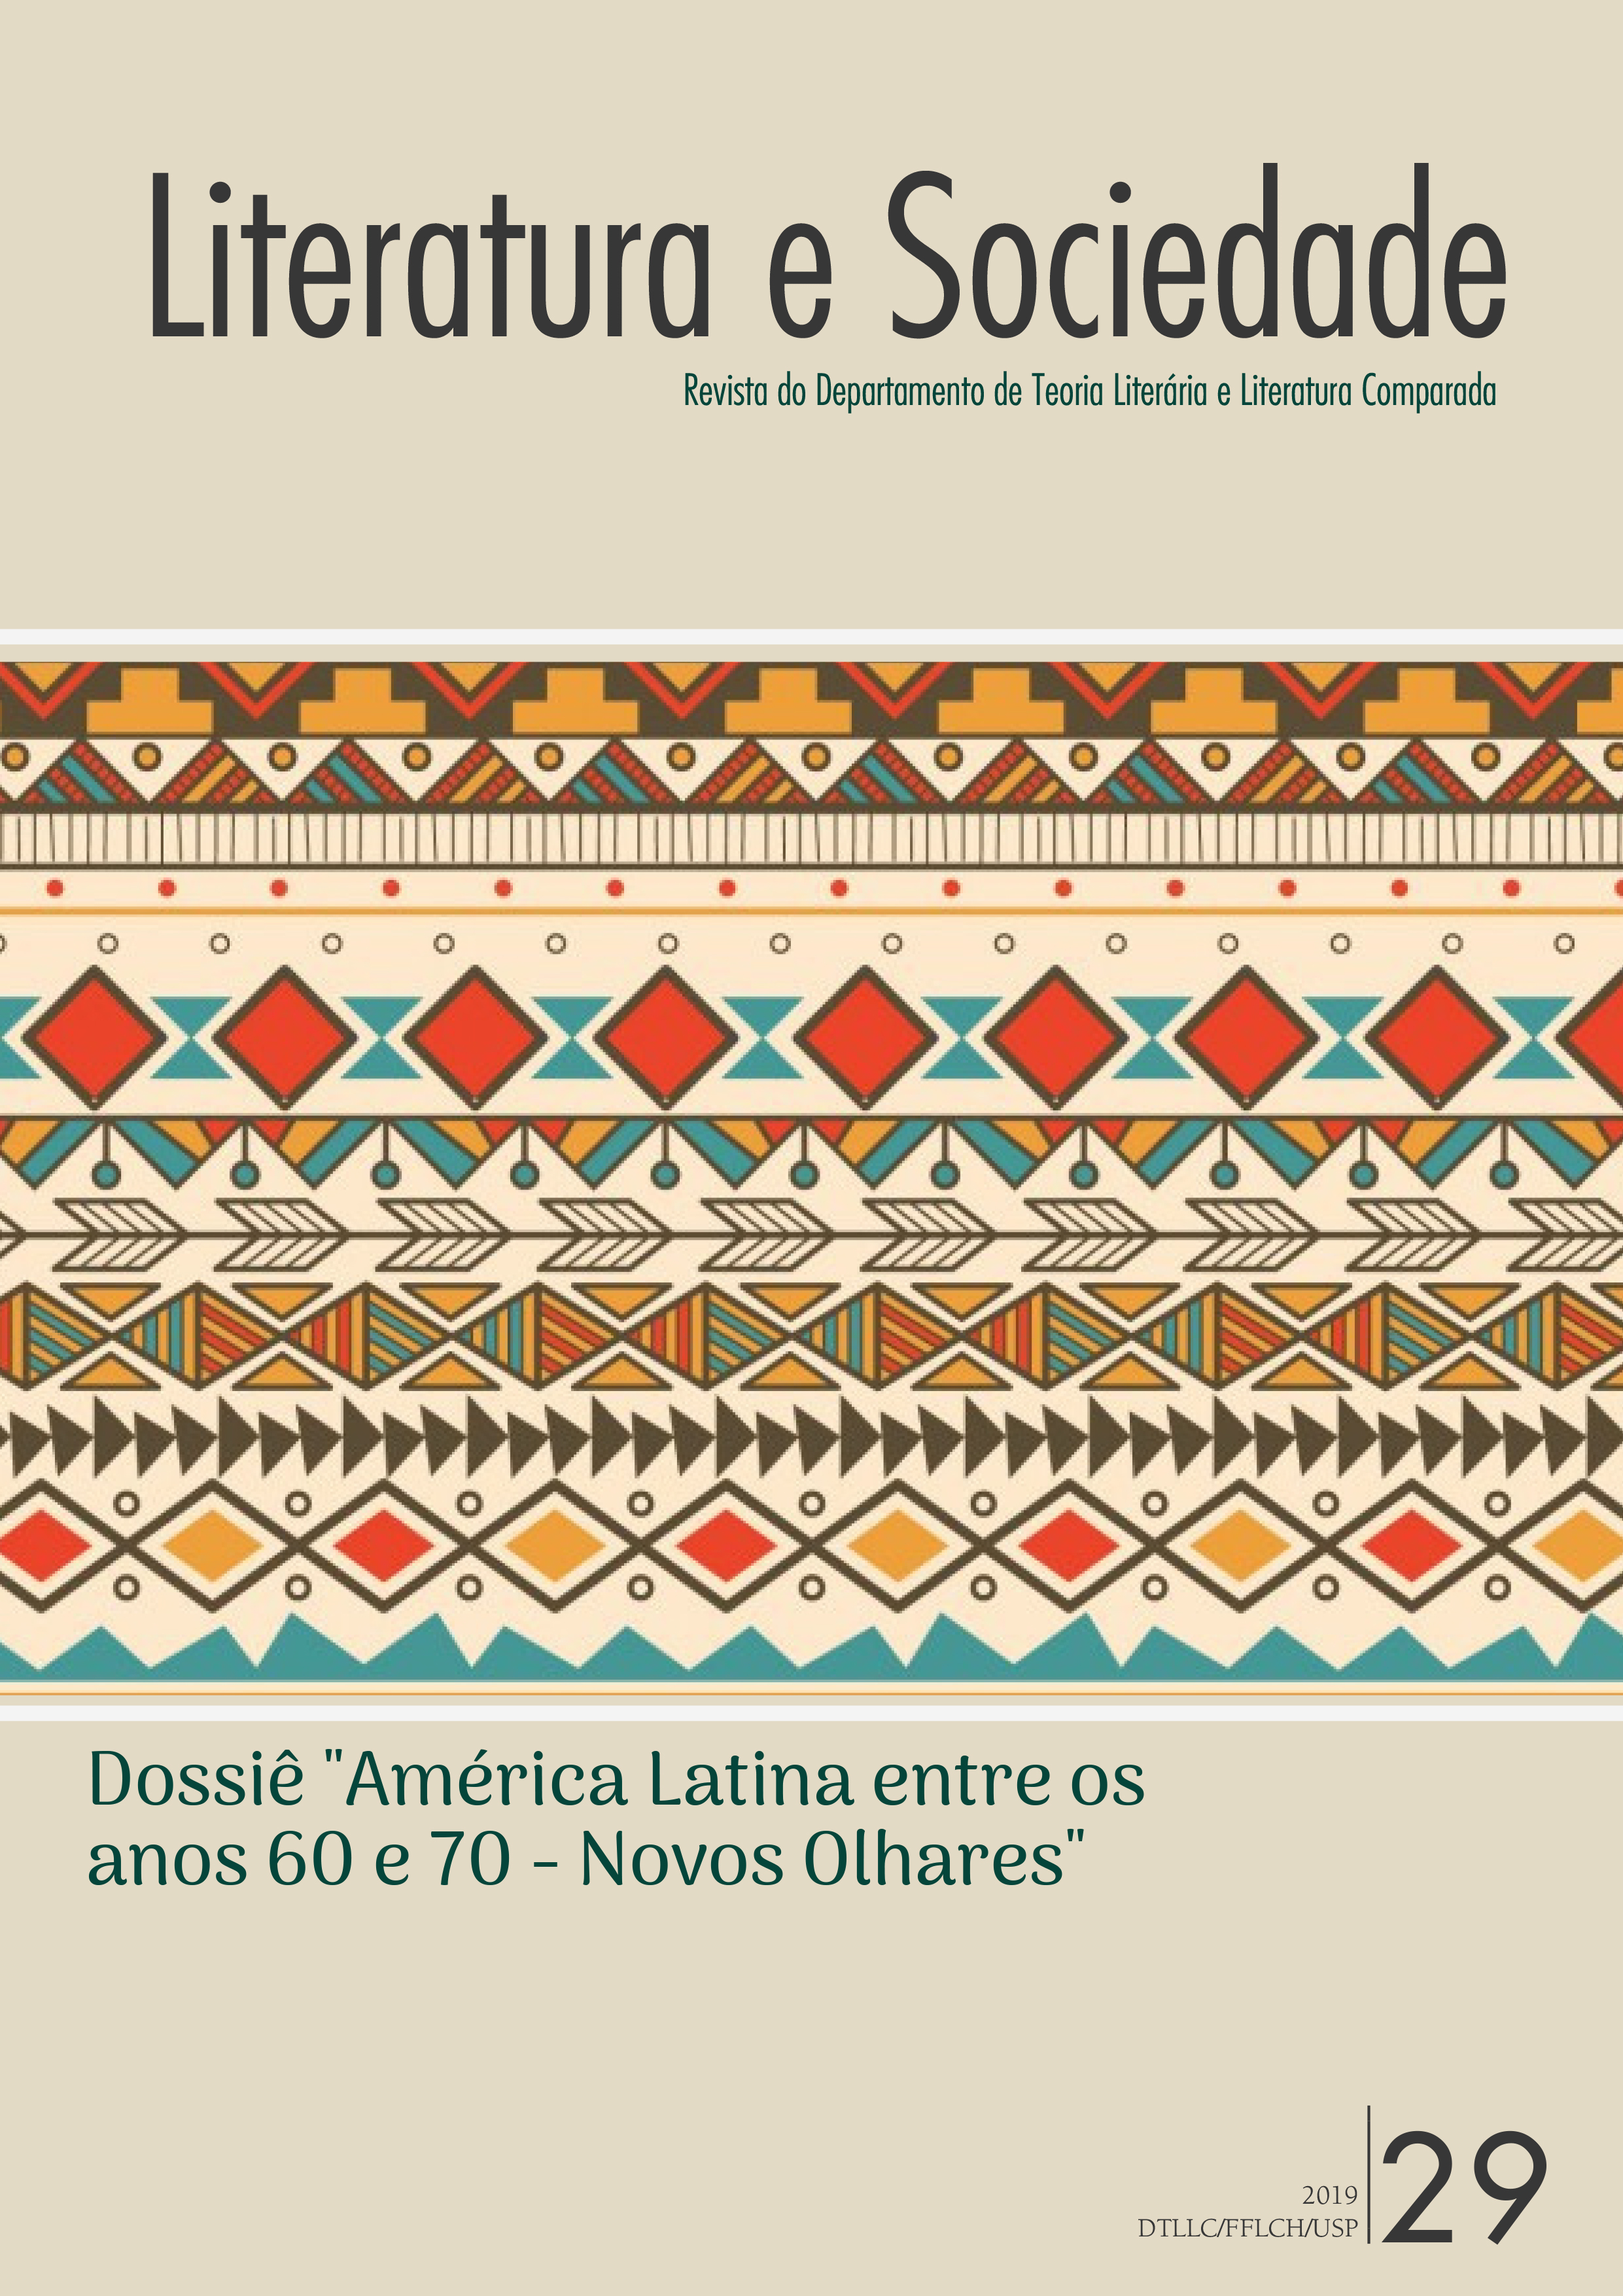 Dossiê América Latina entre os anos 60 e 70: novos olhares